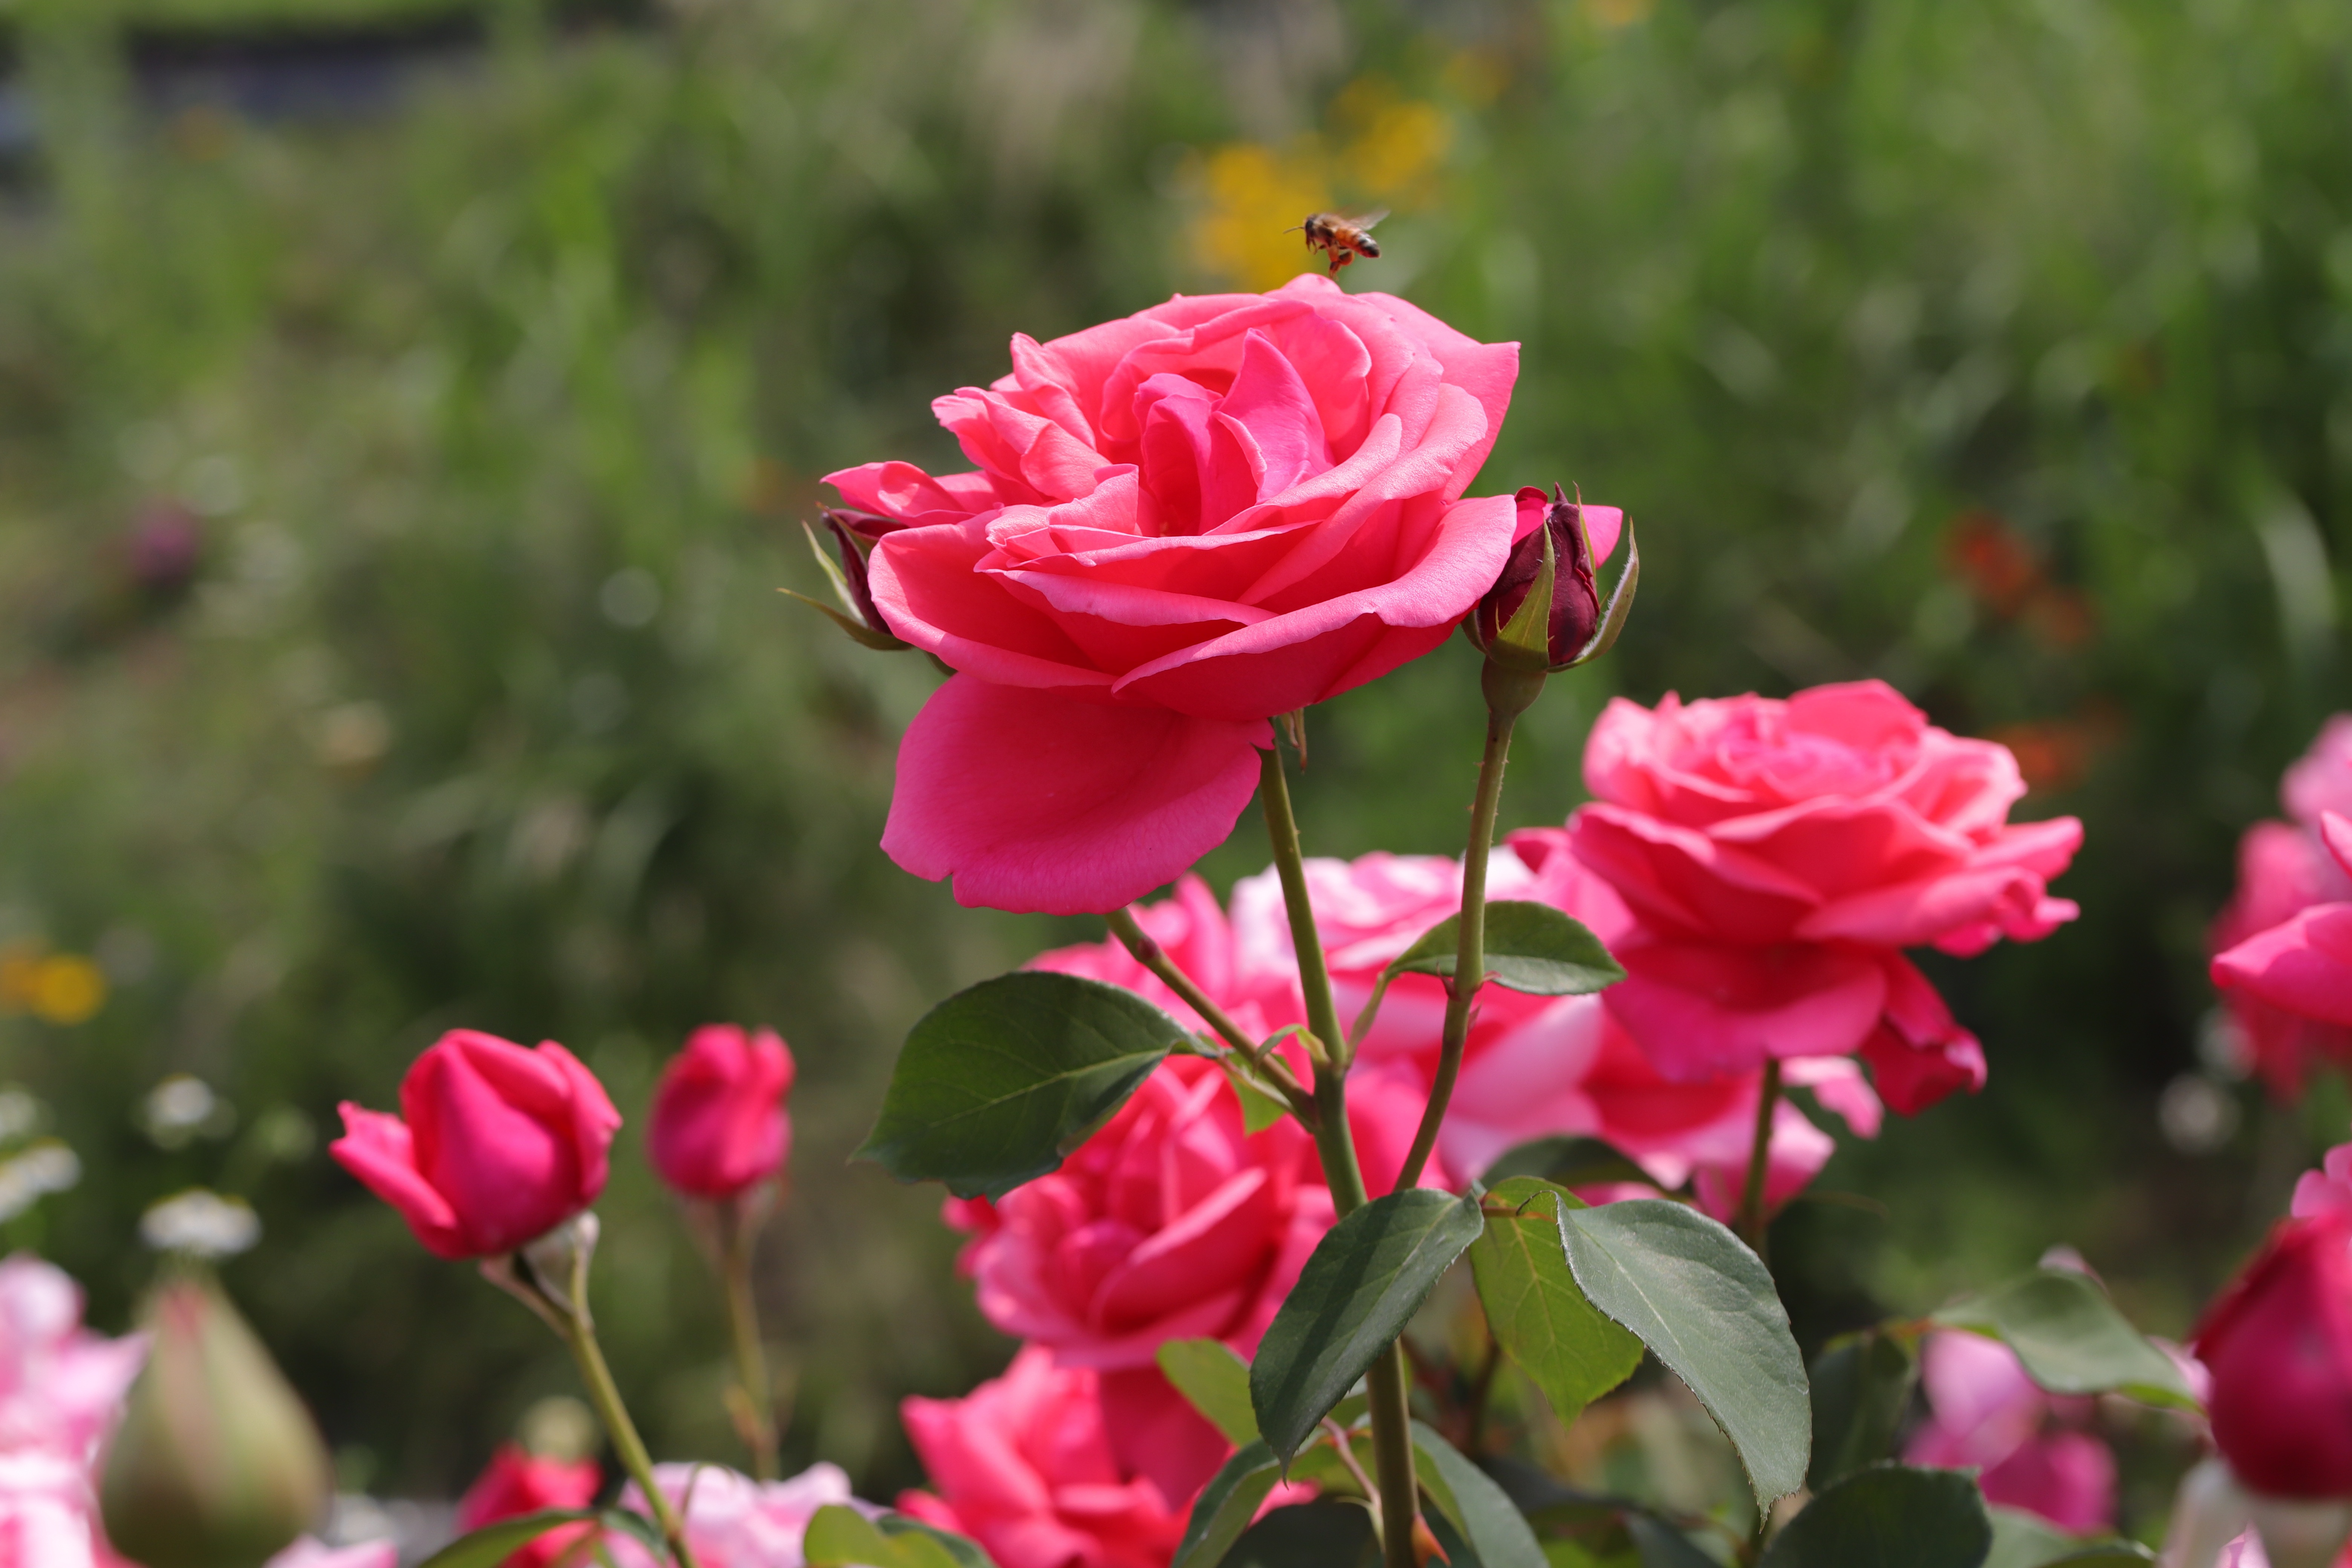 Скачать обои бесплатно Роза, Пчела, Земля/природа, Розовый Цветок, Розовая Роза картинка на рабочий стол ПК